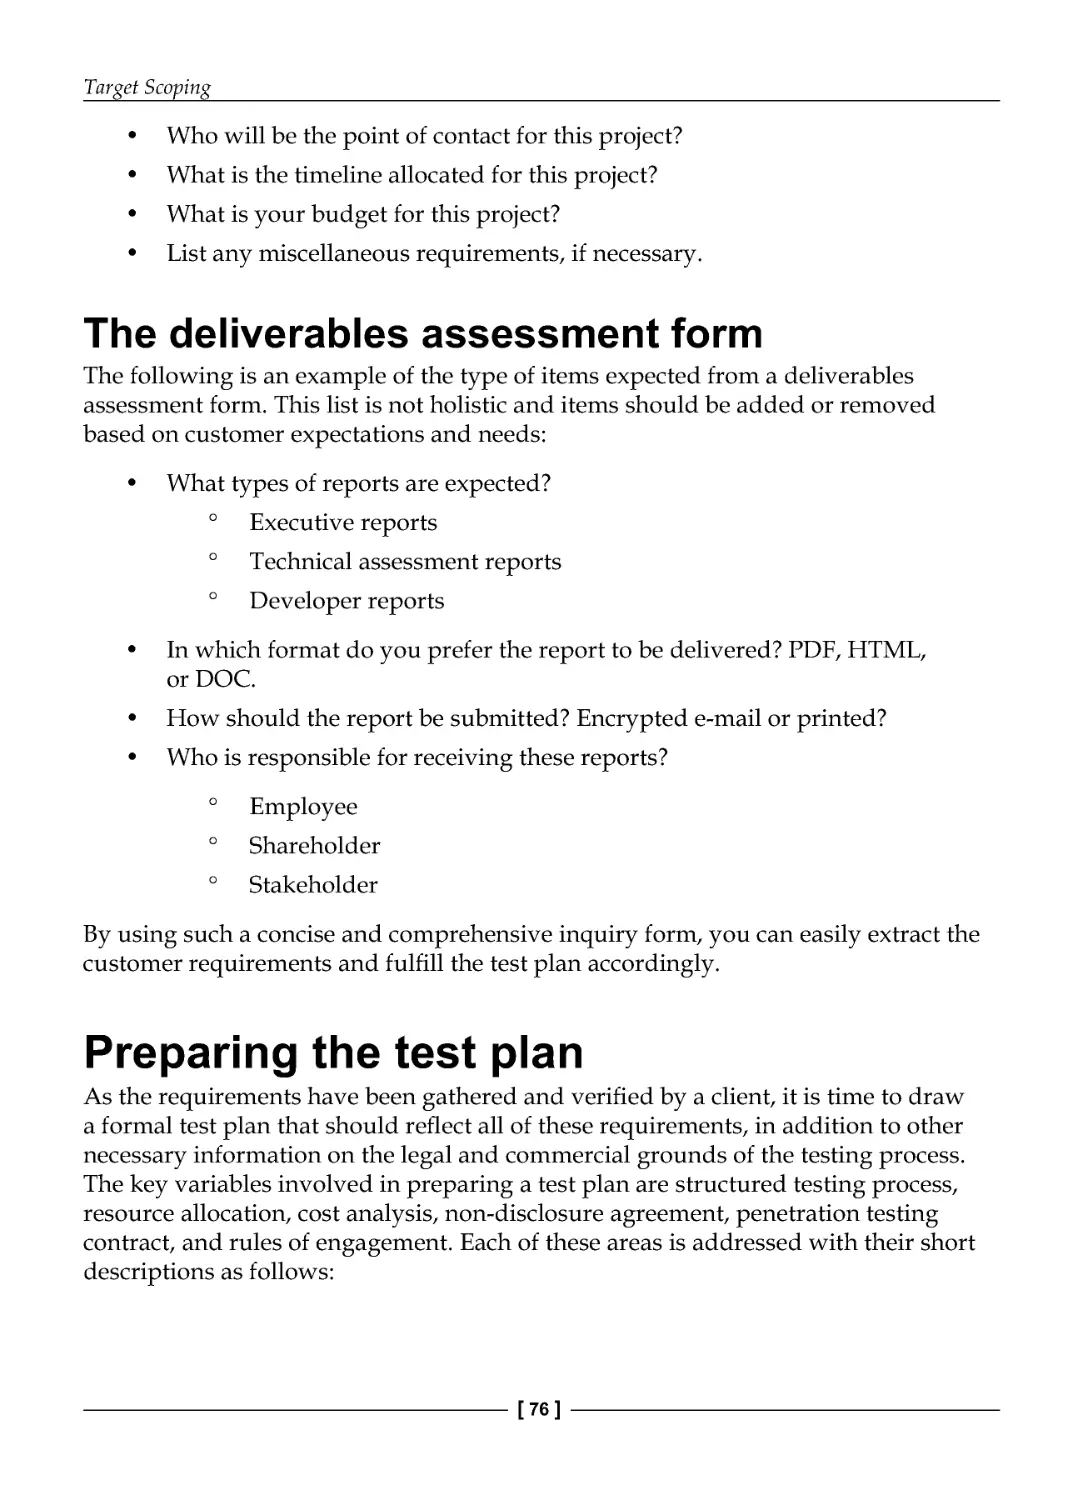 Deliverables assessment form
Preparing the test plan